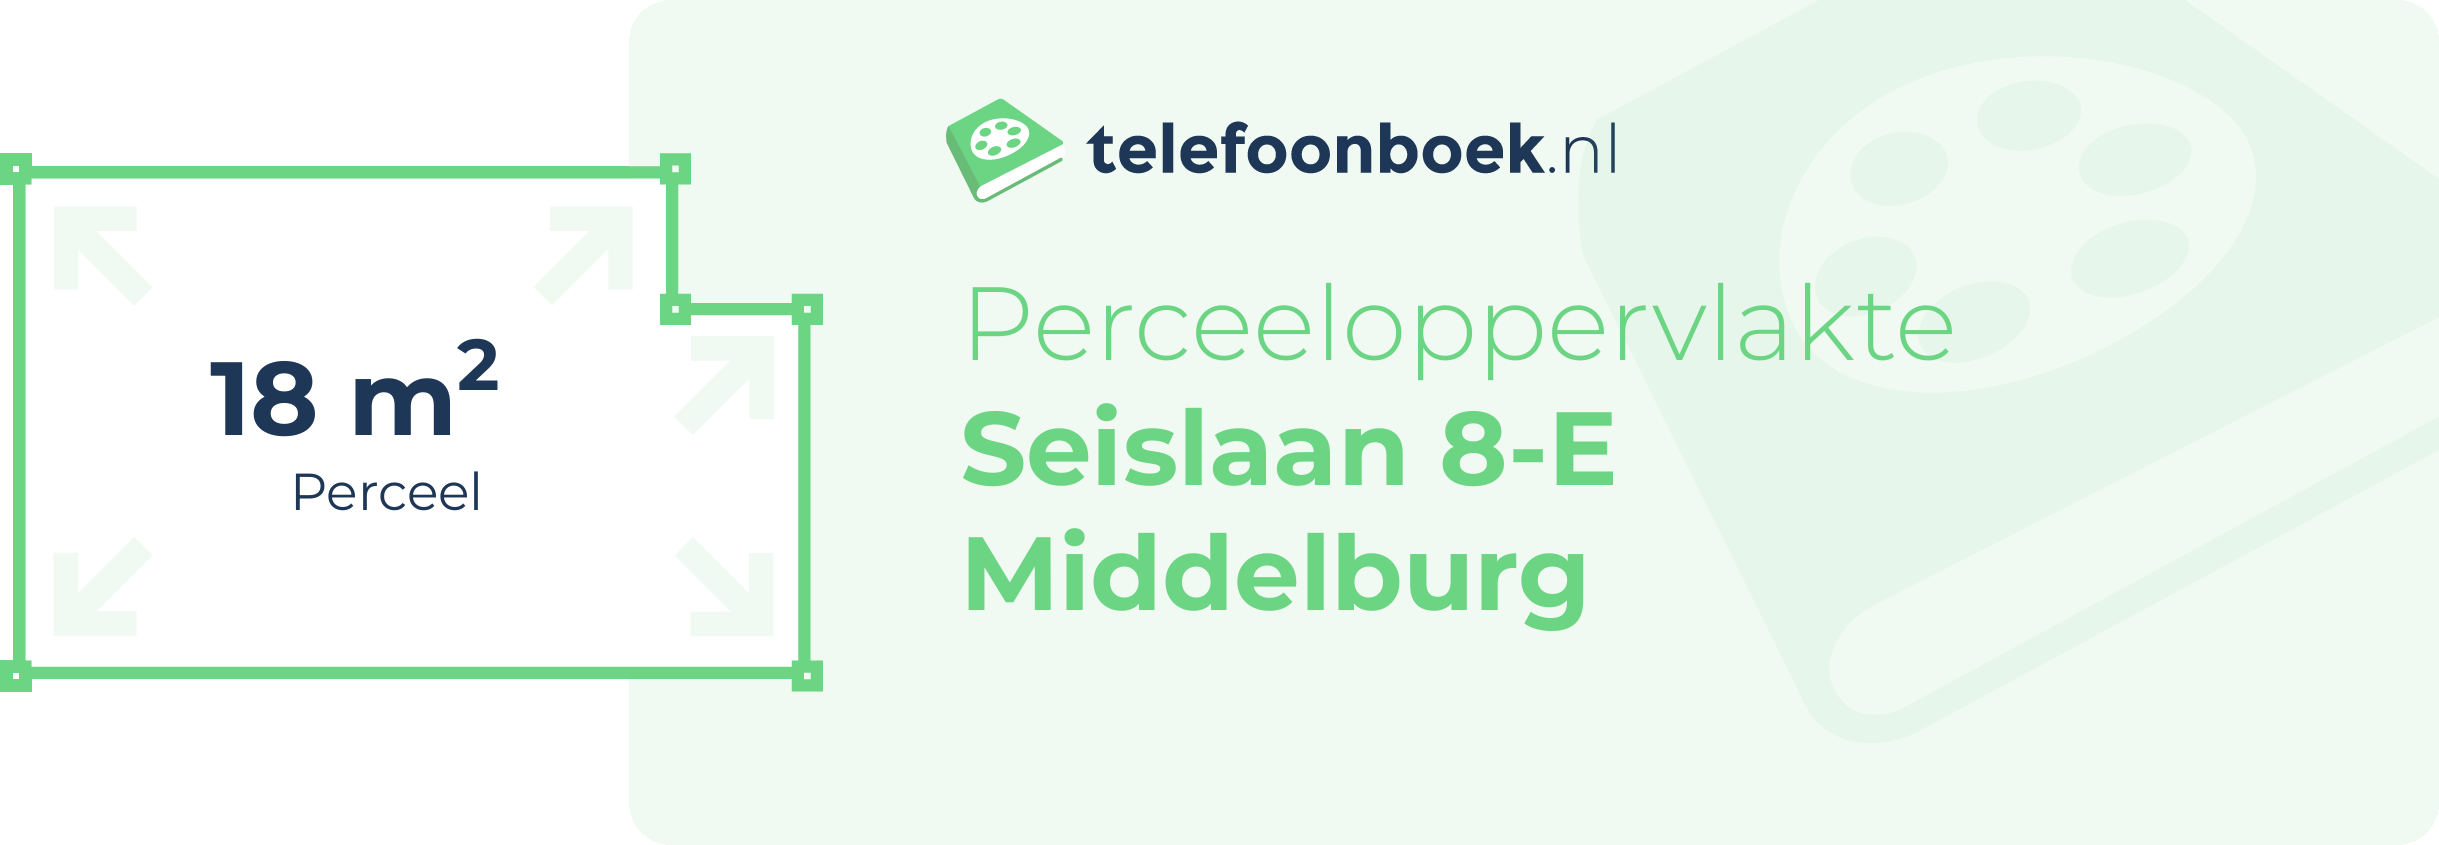 Perceeloppervlakte Seislaan 8-E Middelburg